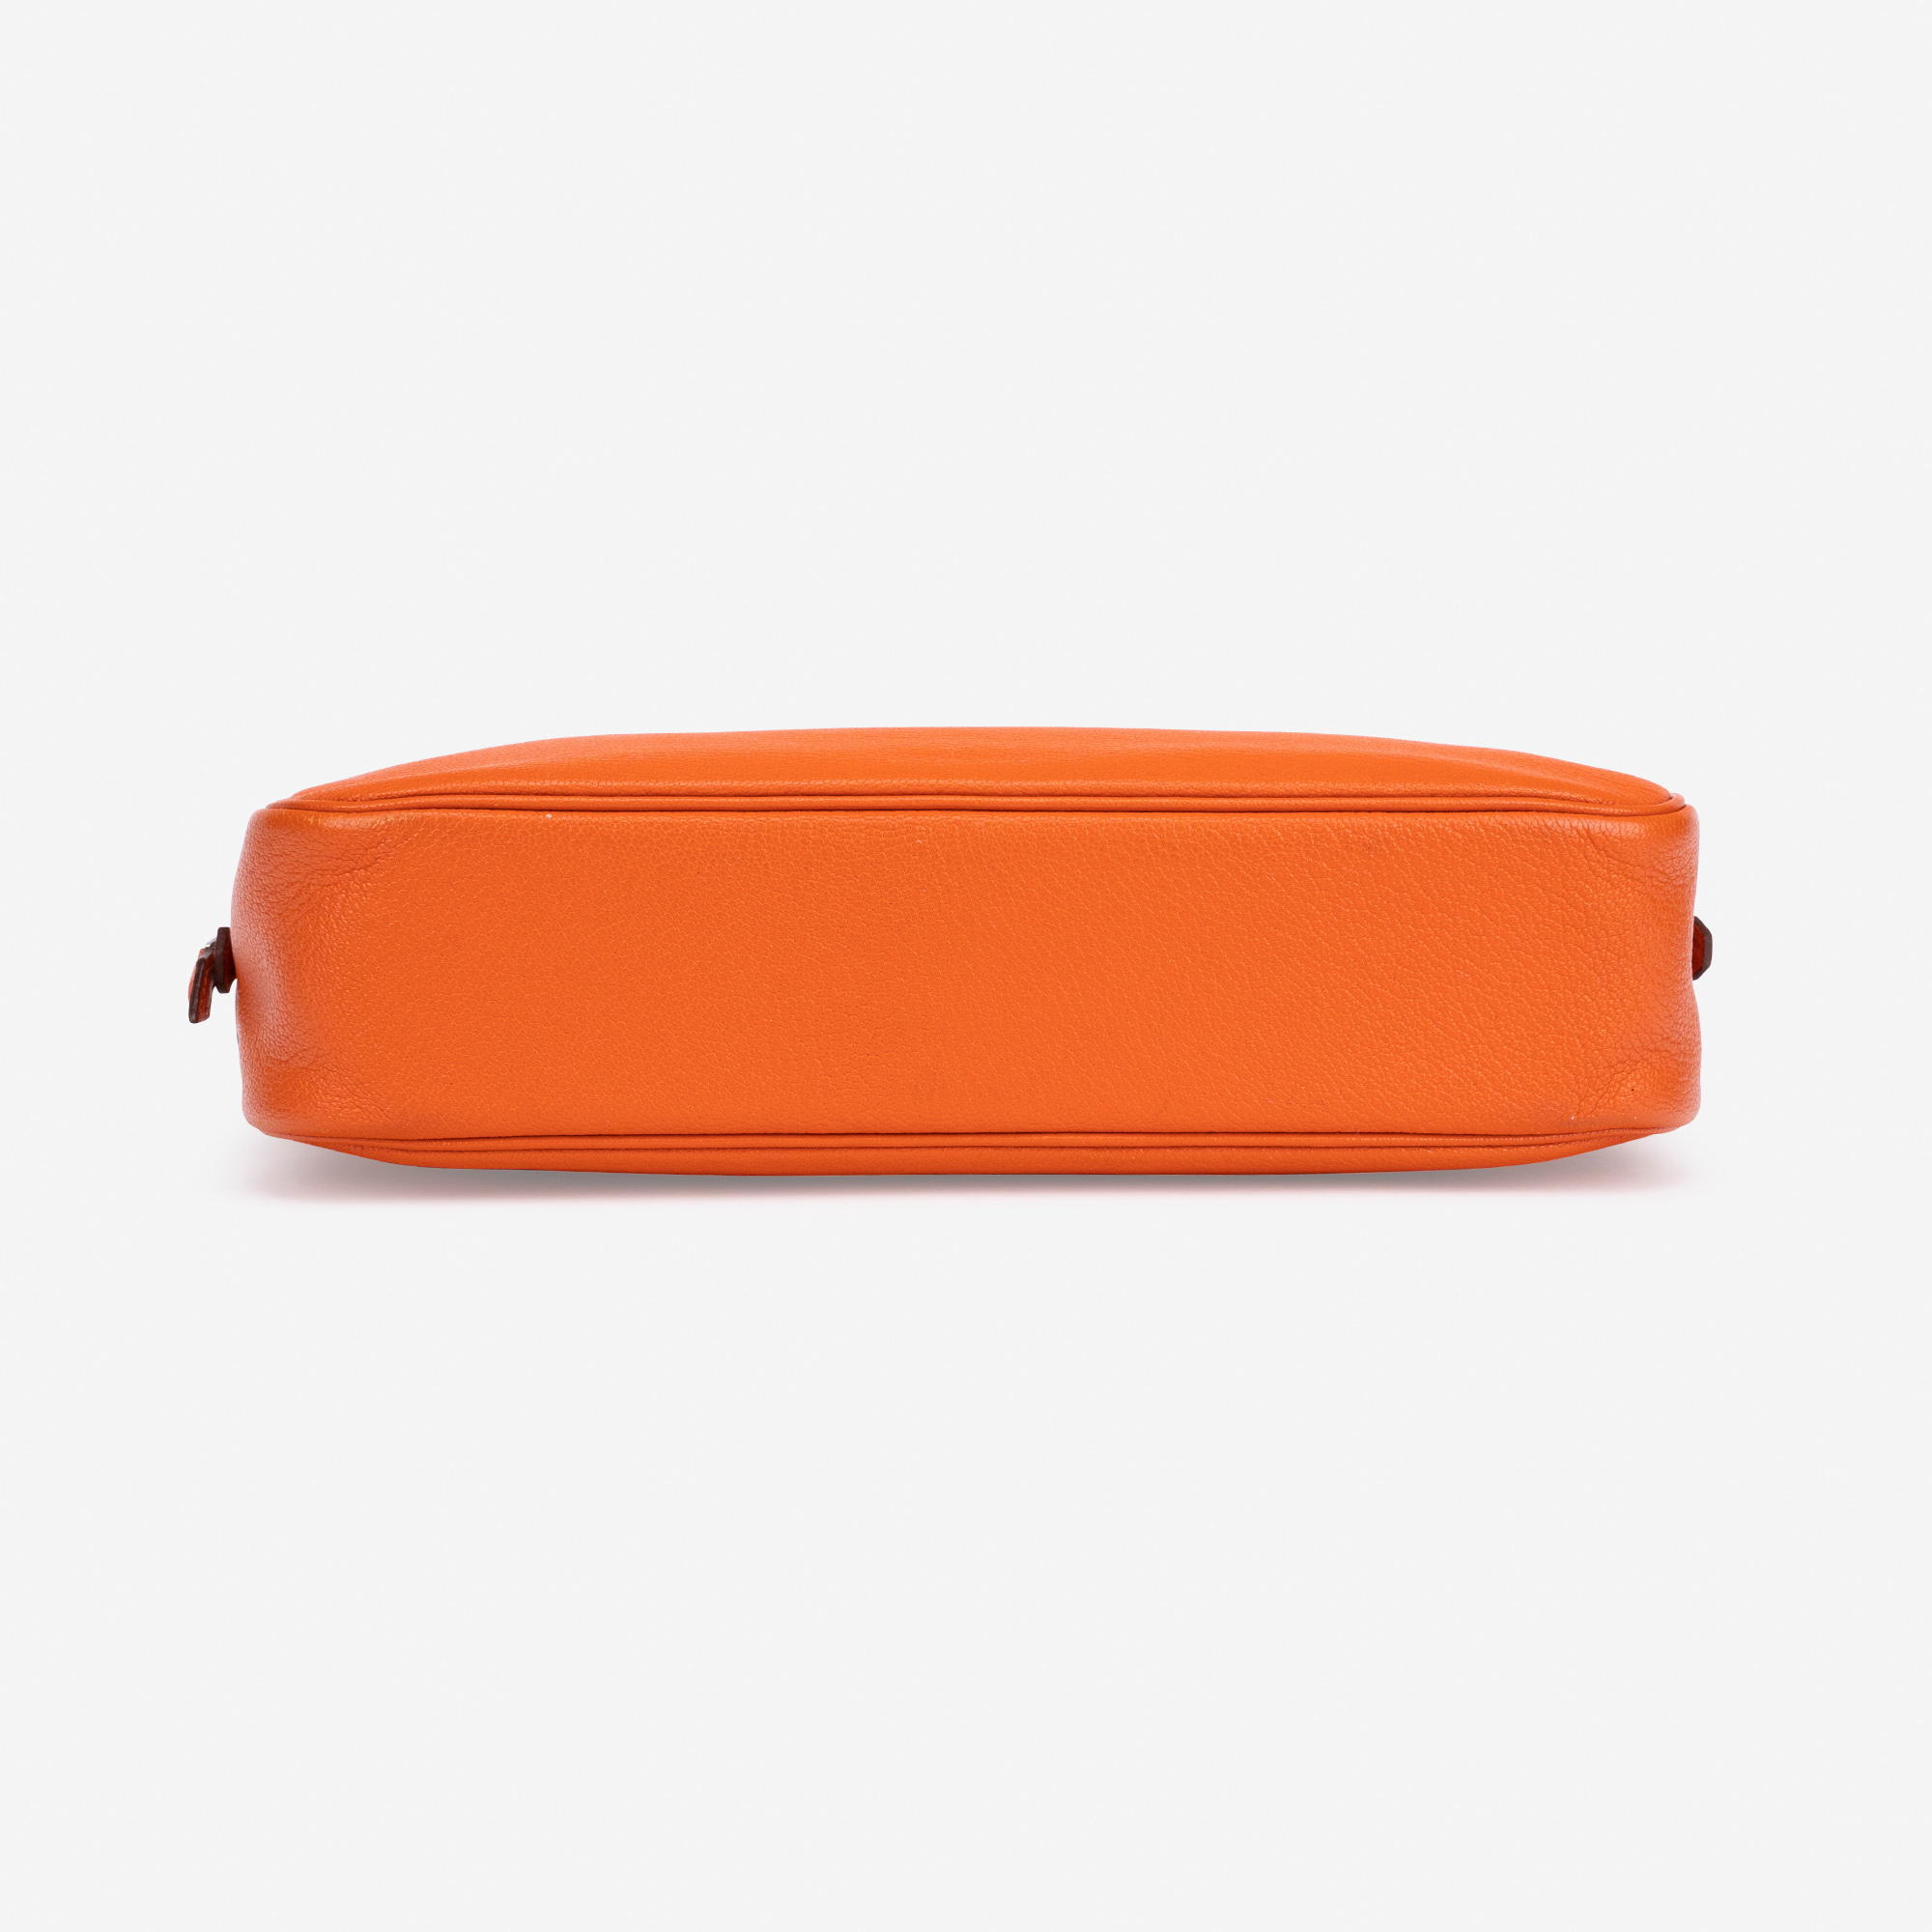 Gebrauchte Hermès Tasche Plume Chevre Orange Orange | Verkaufen Sie Ihre Designer-Tasche auf Saclab.com